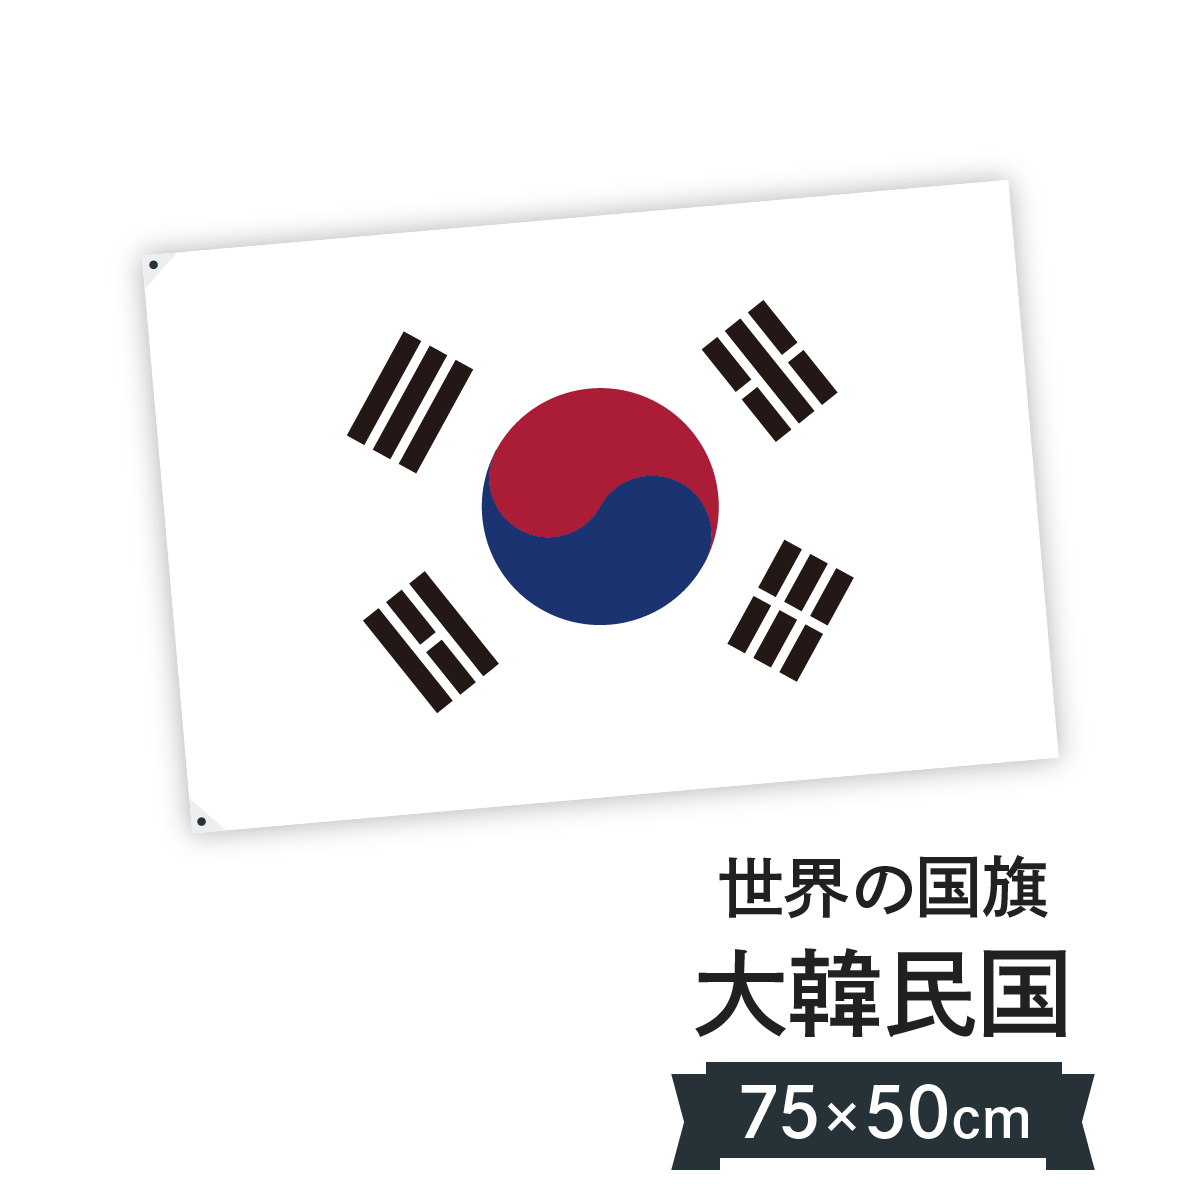 楽天市場 大韓民国 韓国 国旗 W75cm H50cm グッズプロ